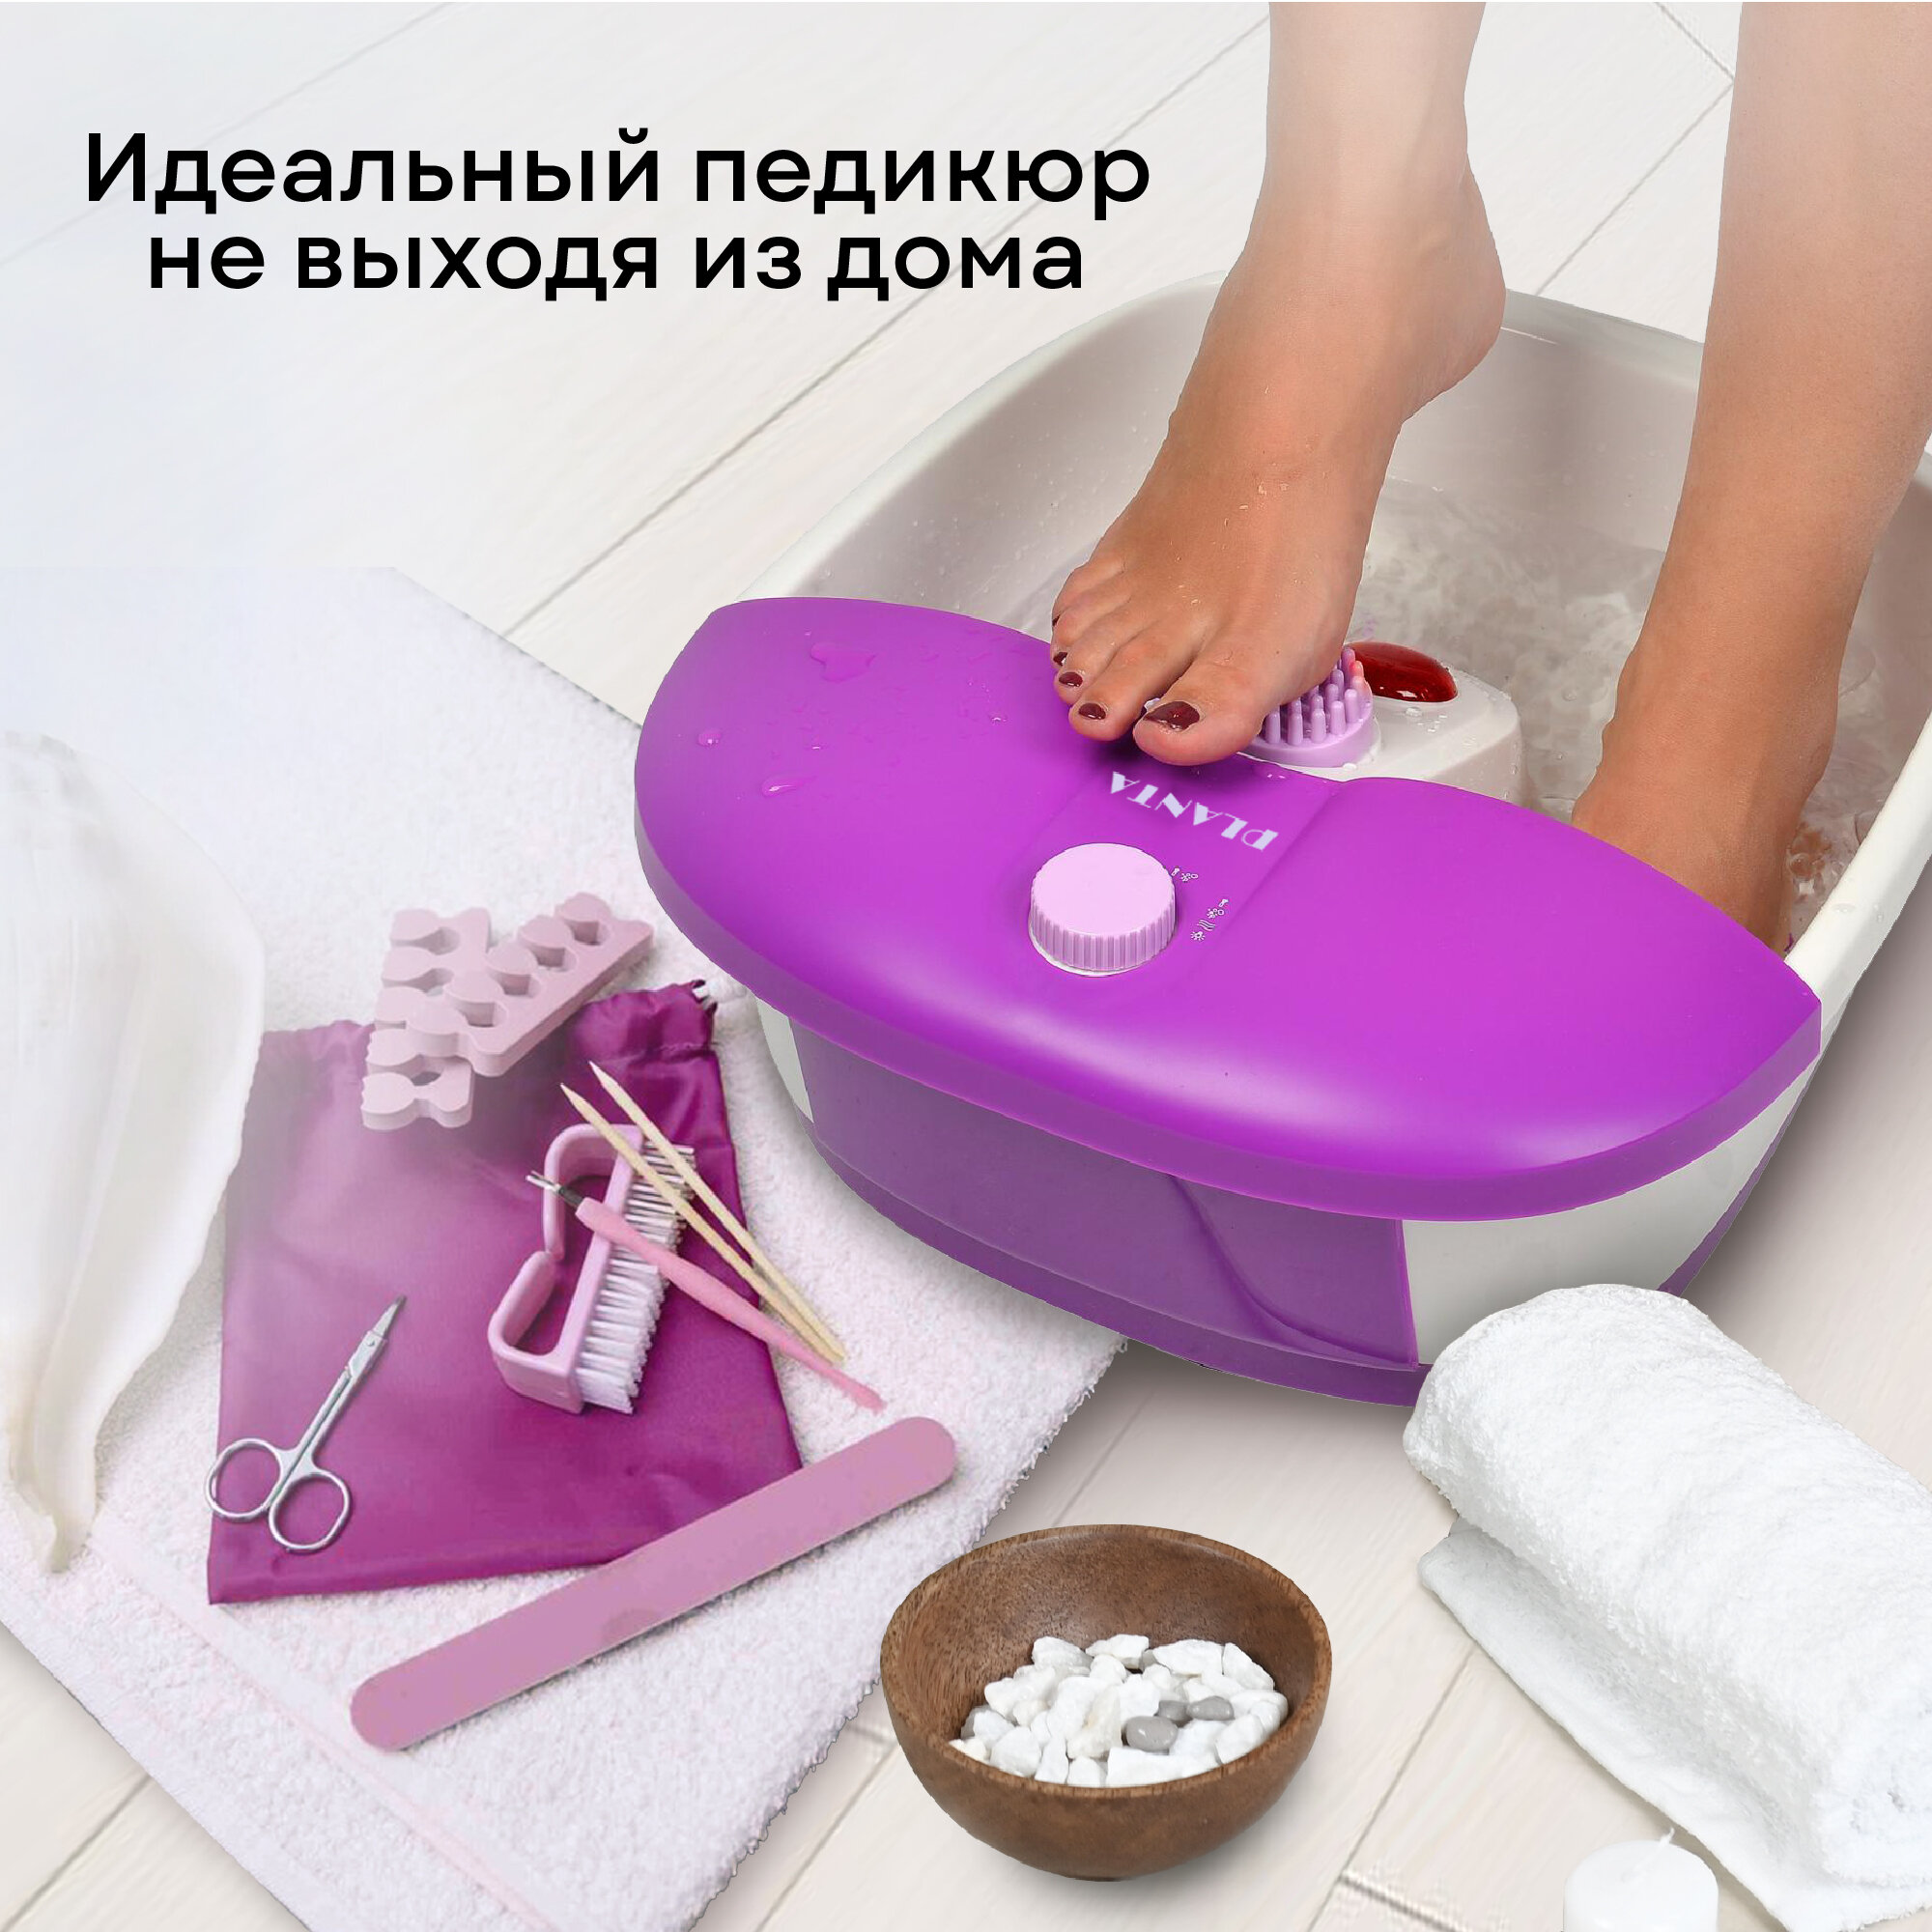 PLANTA Гидромассажная ванночка MFS-200V Spa Salon, 3 режима работы, маникюрно-педикюрный набор в комплекте